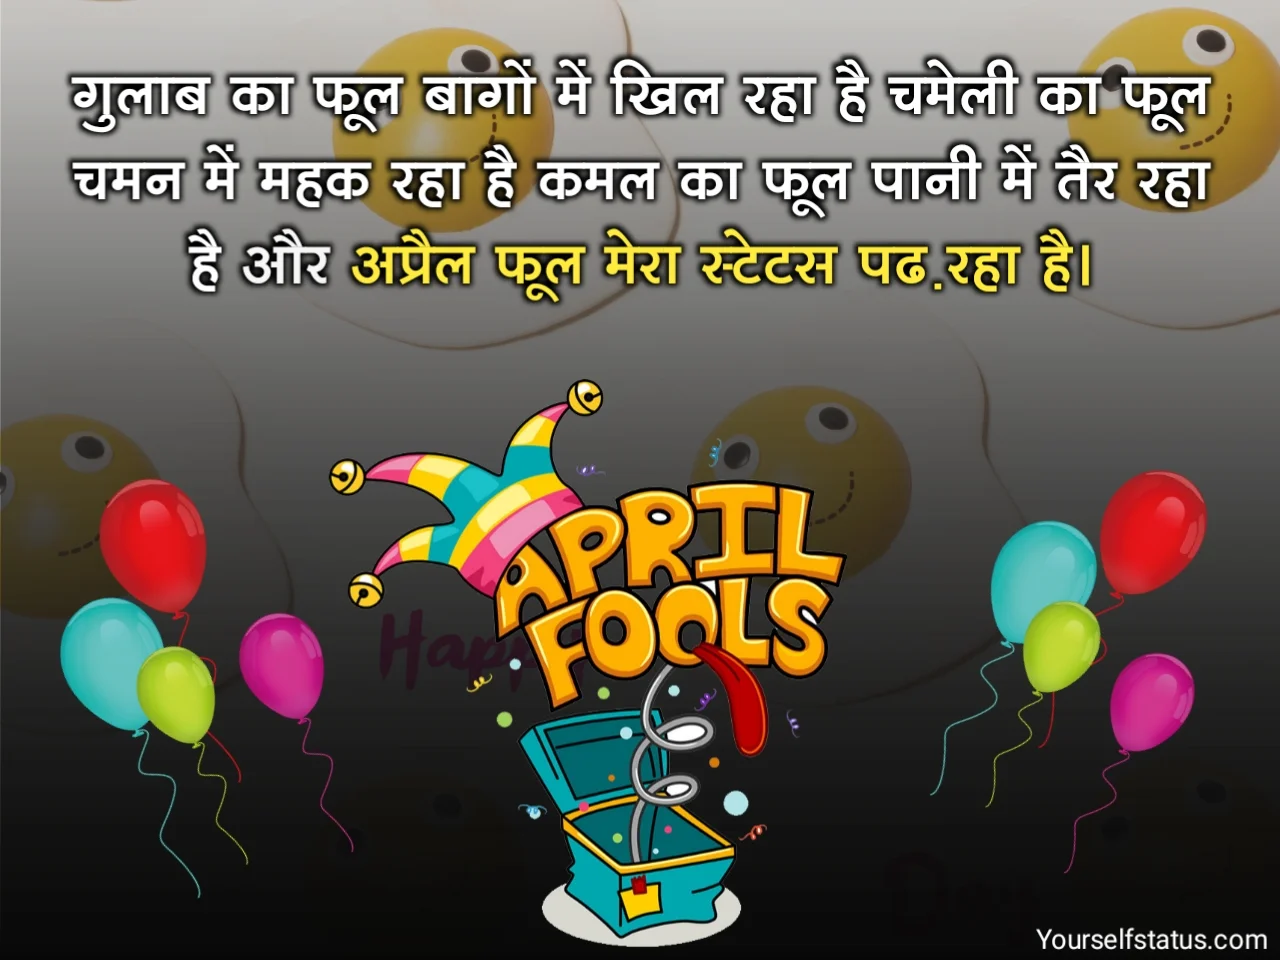 April fools day jokes in hindi